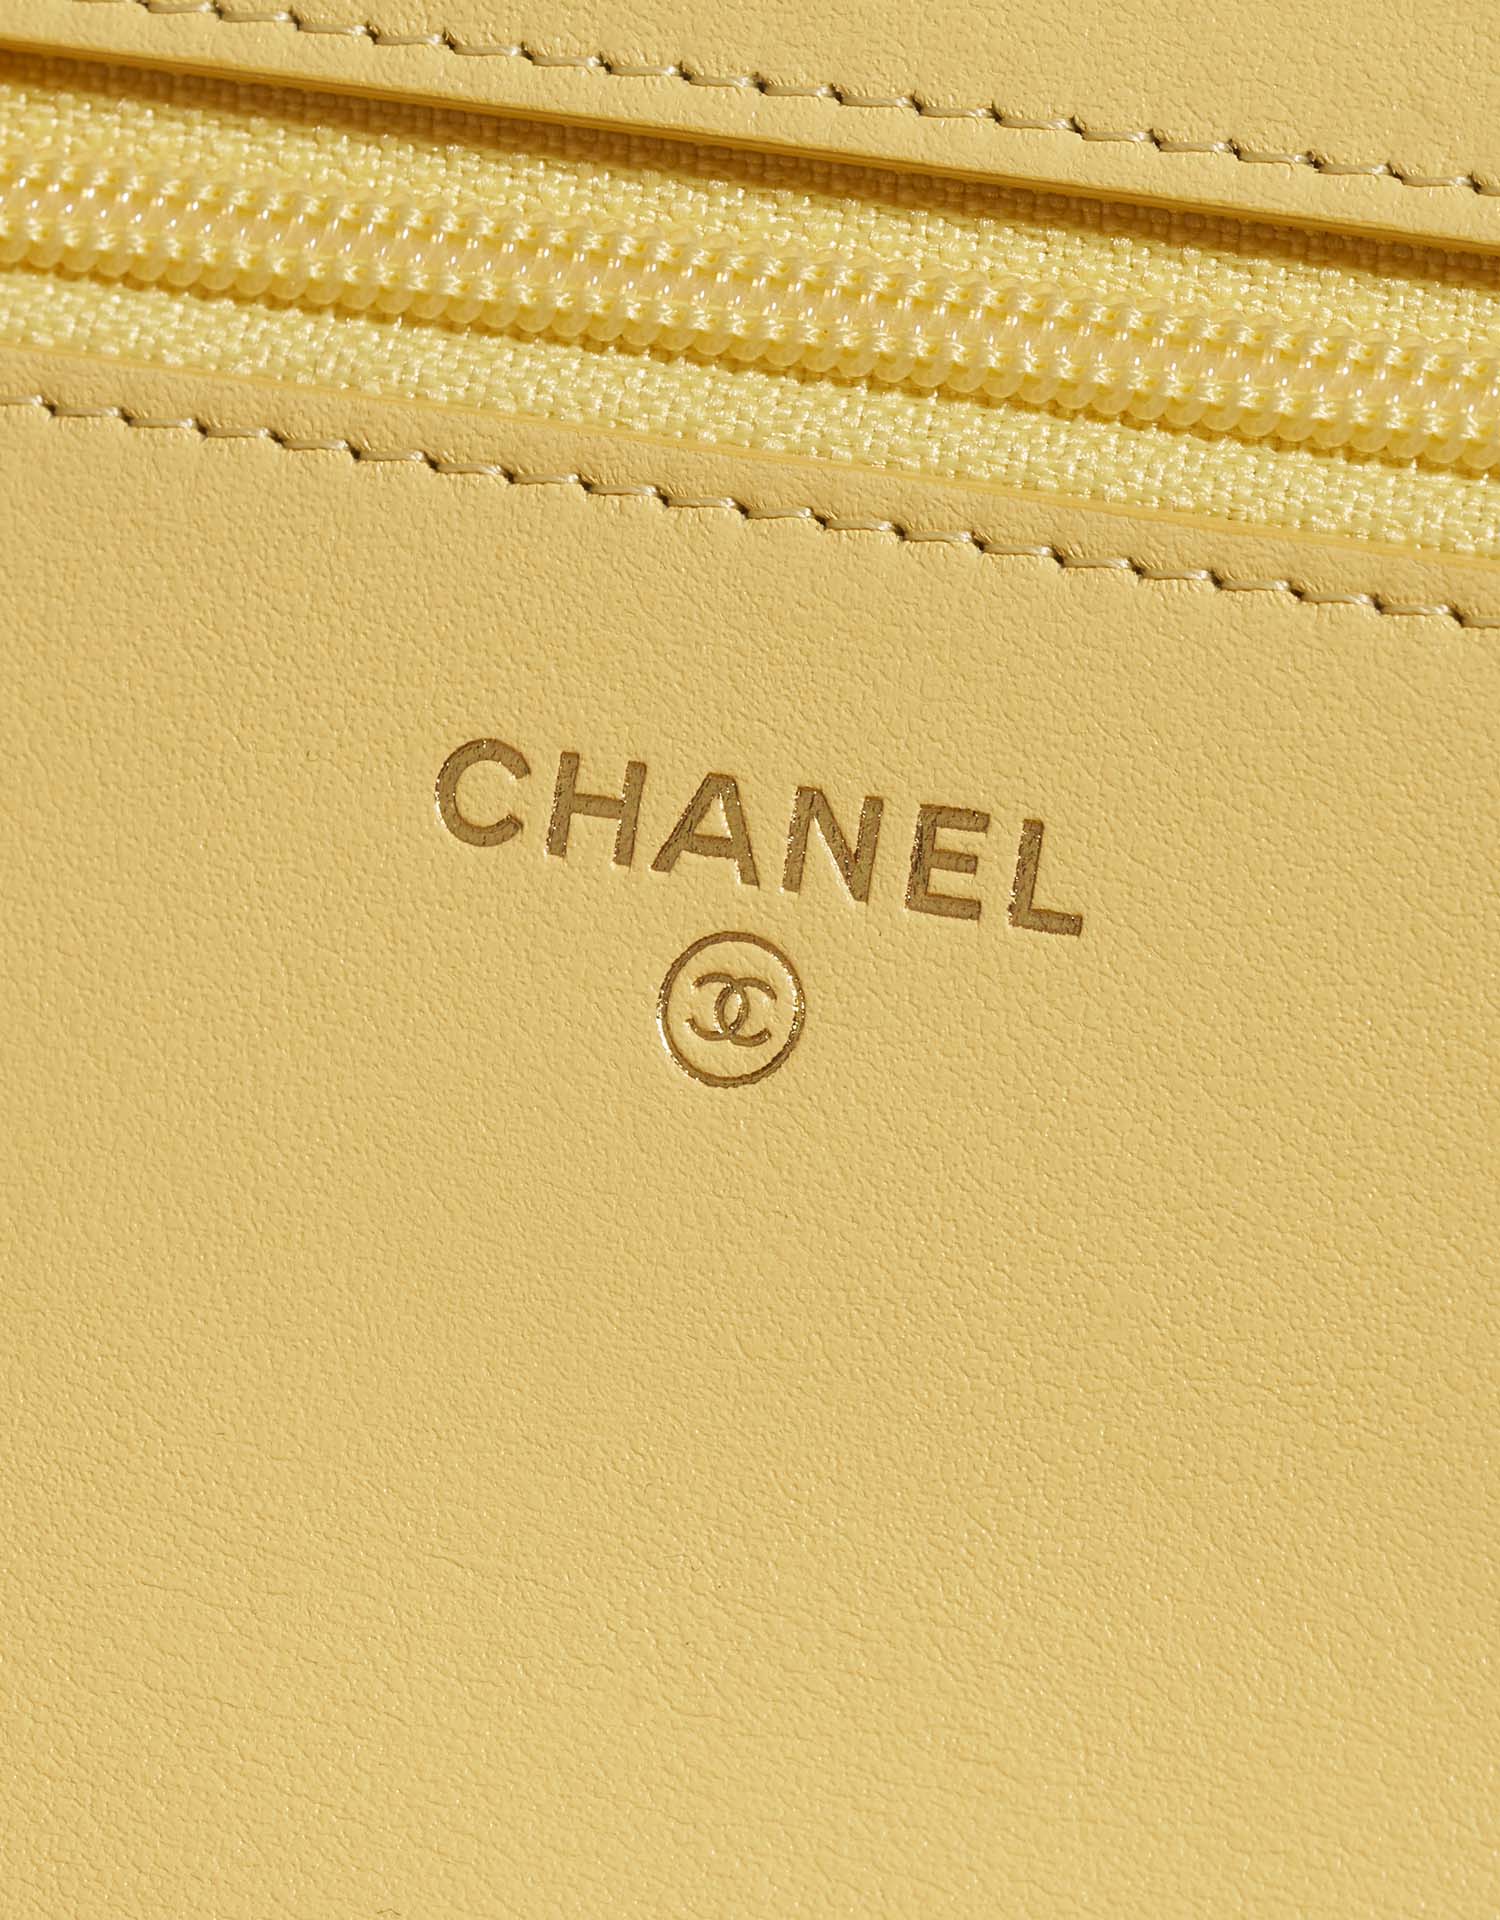 Chanel 19 WOC Gelb-Beige Logo | Verkaufen Sie Ihre Designertasche auf Saclab.com